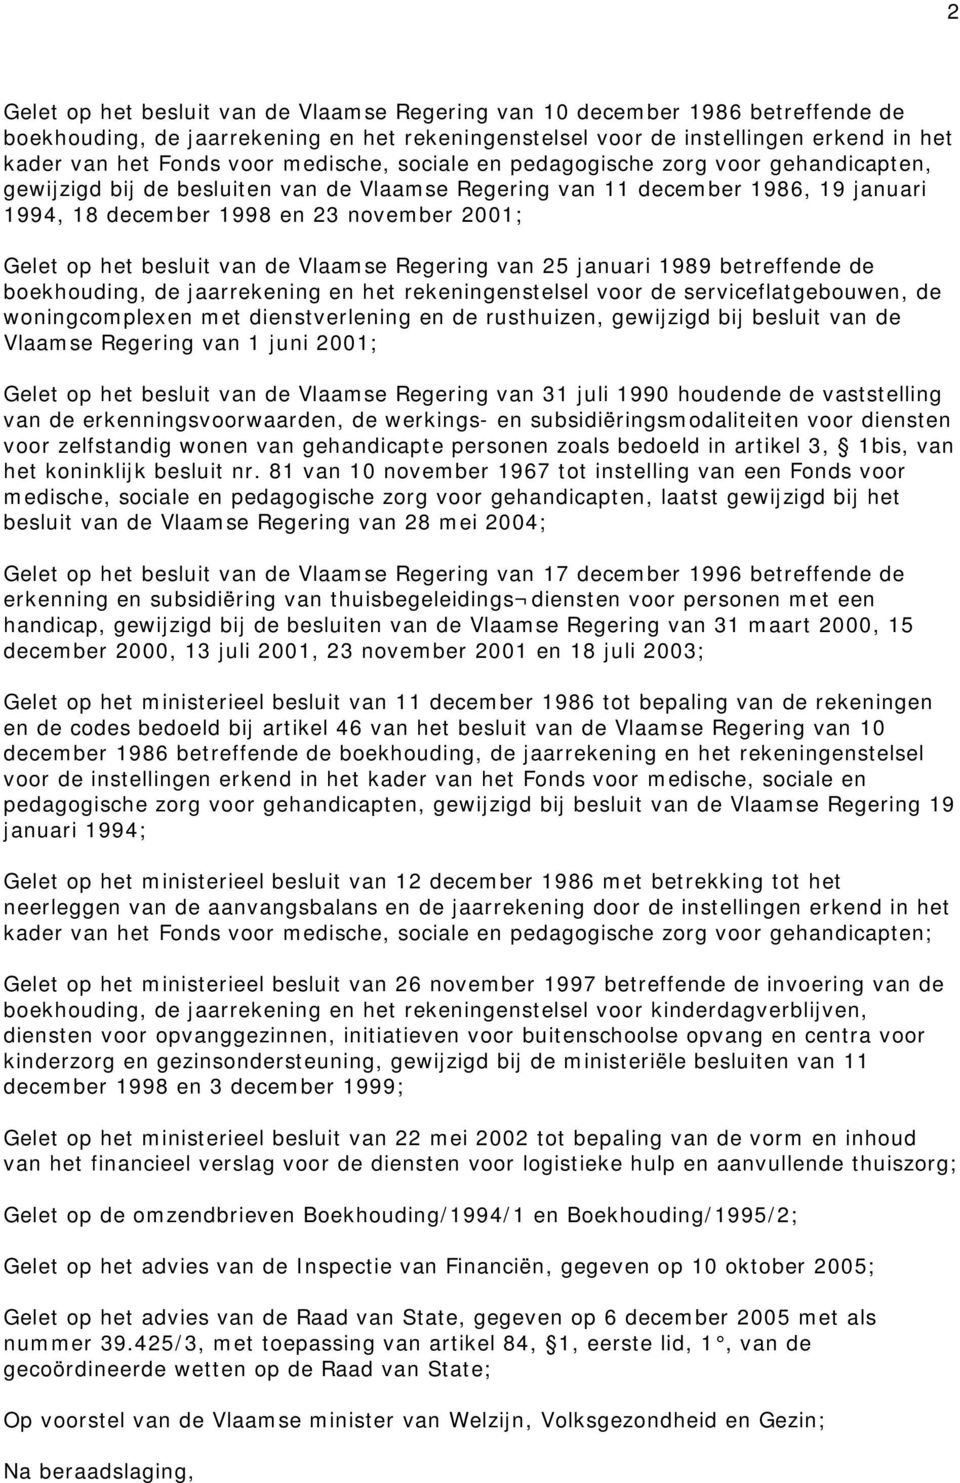 besluit van de Vlaamse Regering van 25 januari 1989 betreffende de boekhouding, de jaarrekening en het rekeningenstelsel voor de serviceflatgebouwen, de woningcomplexen met dienstverlening en de